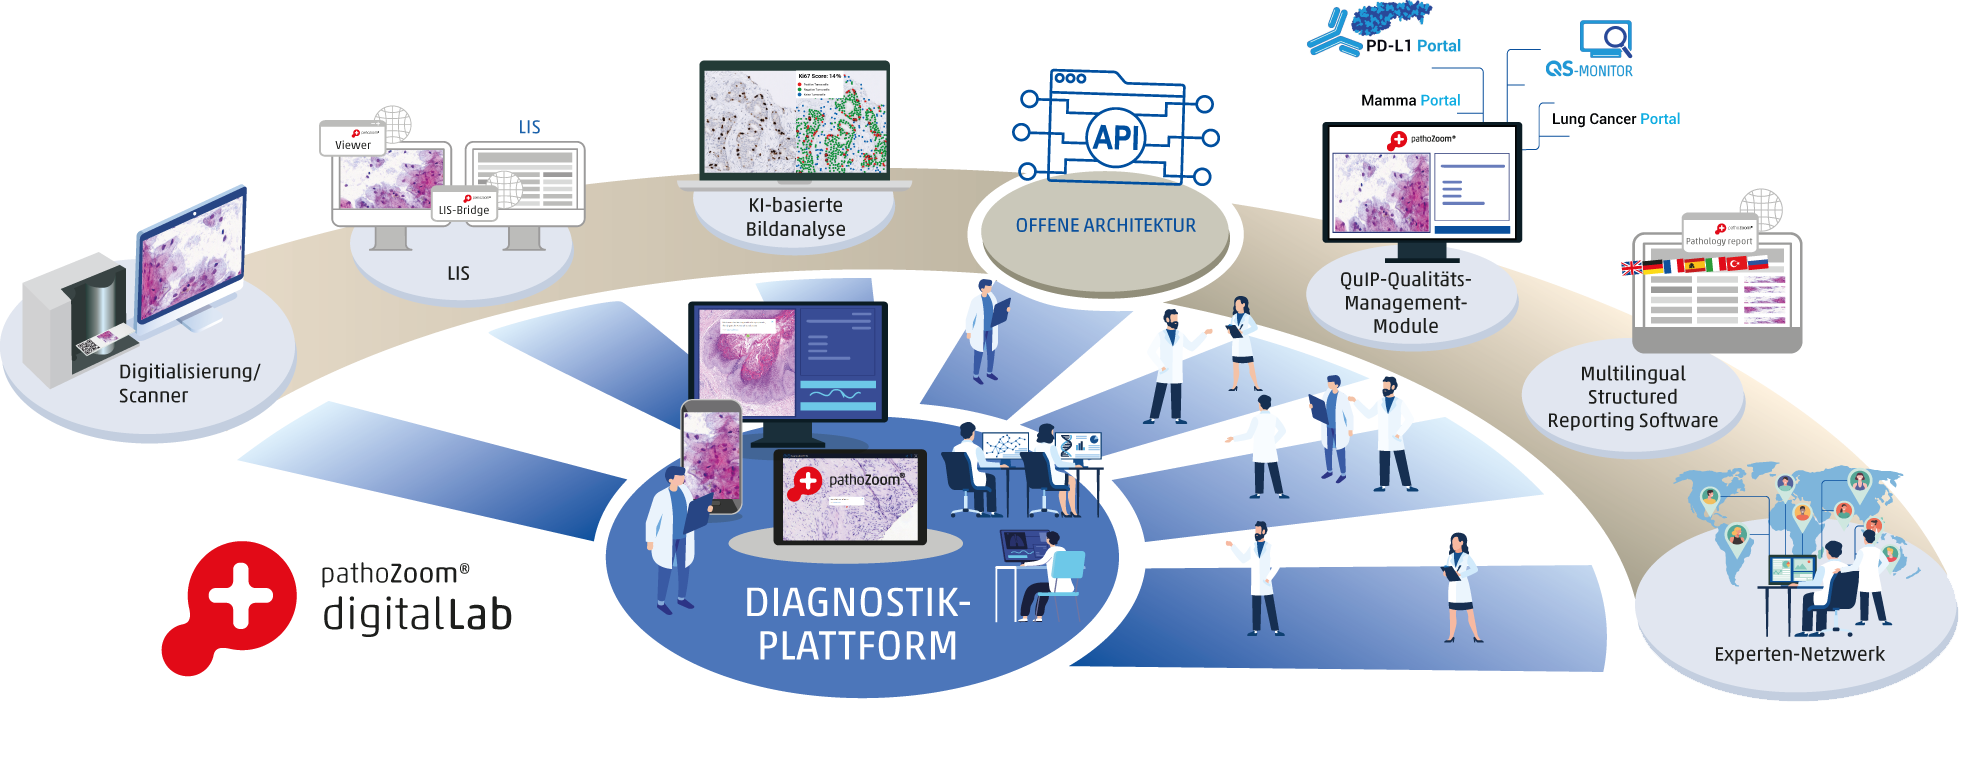 Möglichkeiten der Diagnostik-Plattform PathoZoom Digital Lab